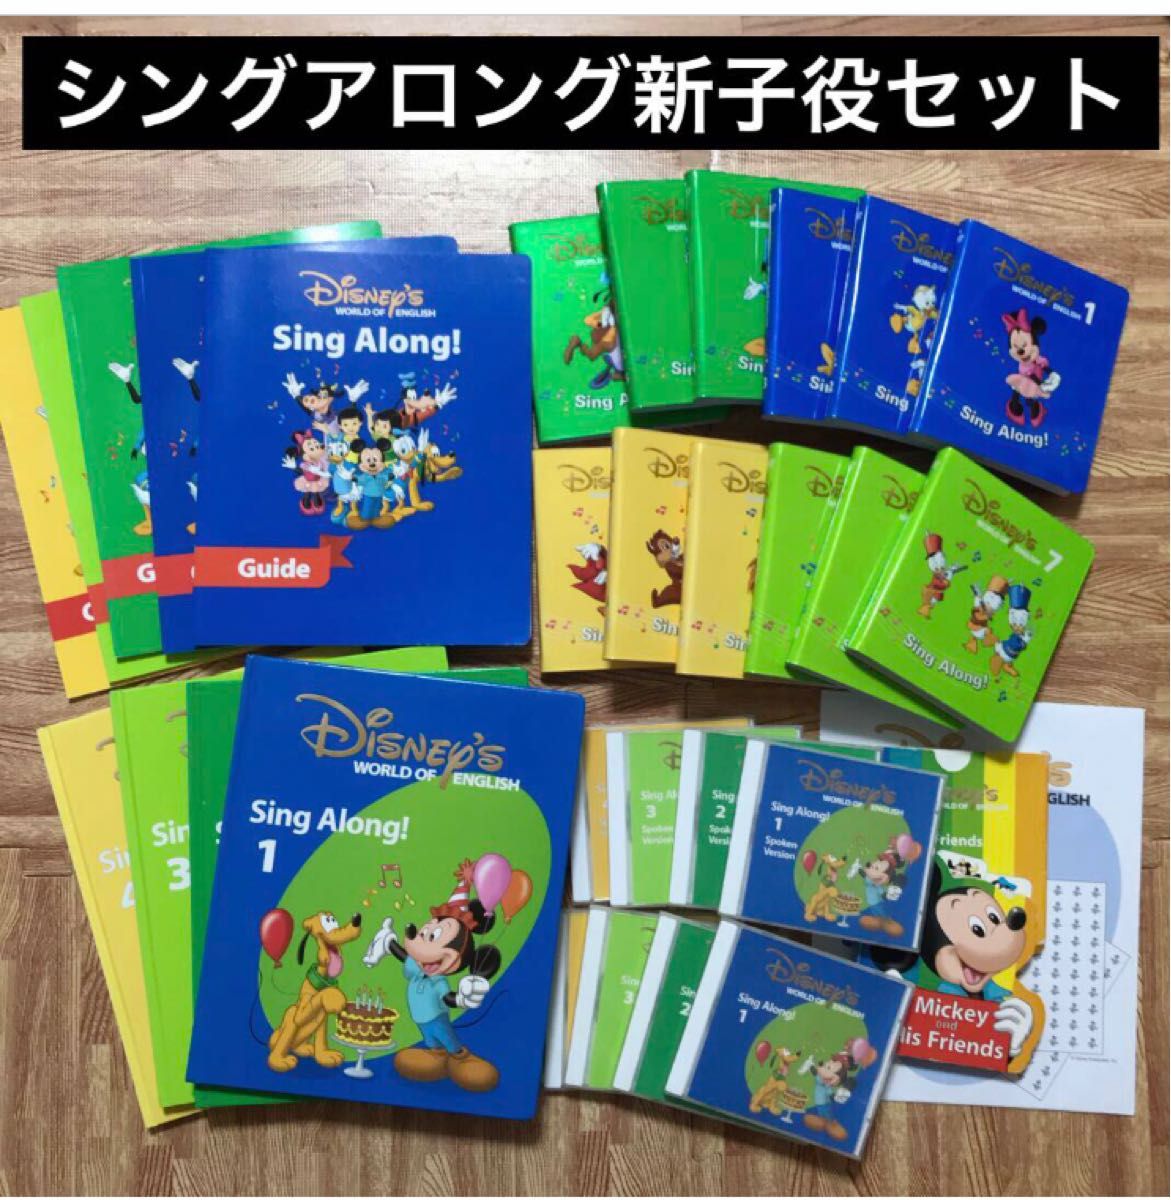 ディズニー英語システム DWE シングアロング 新子役/ DVD CD カード-